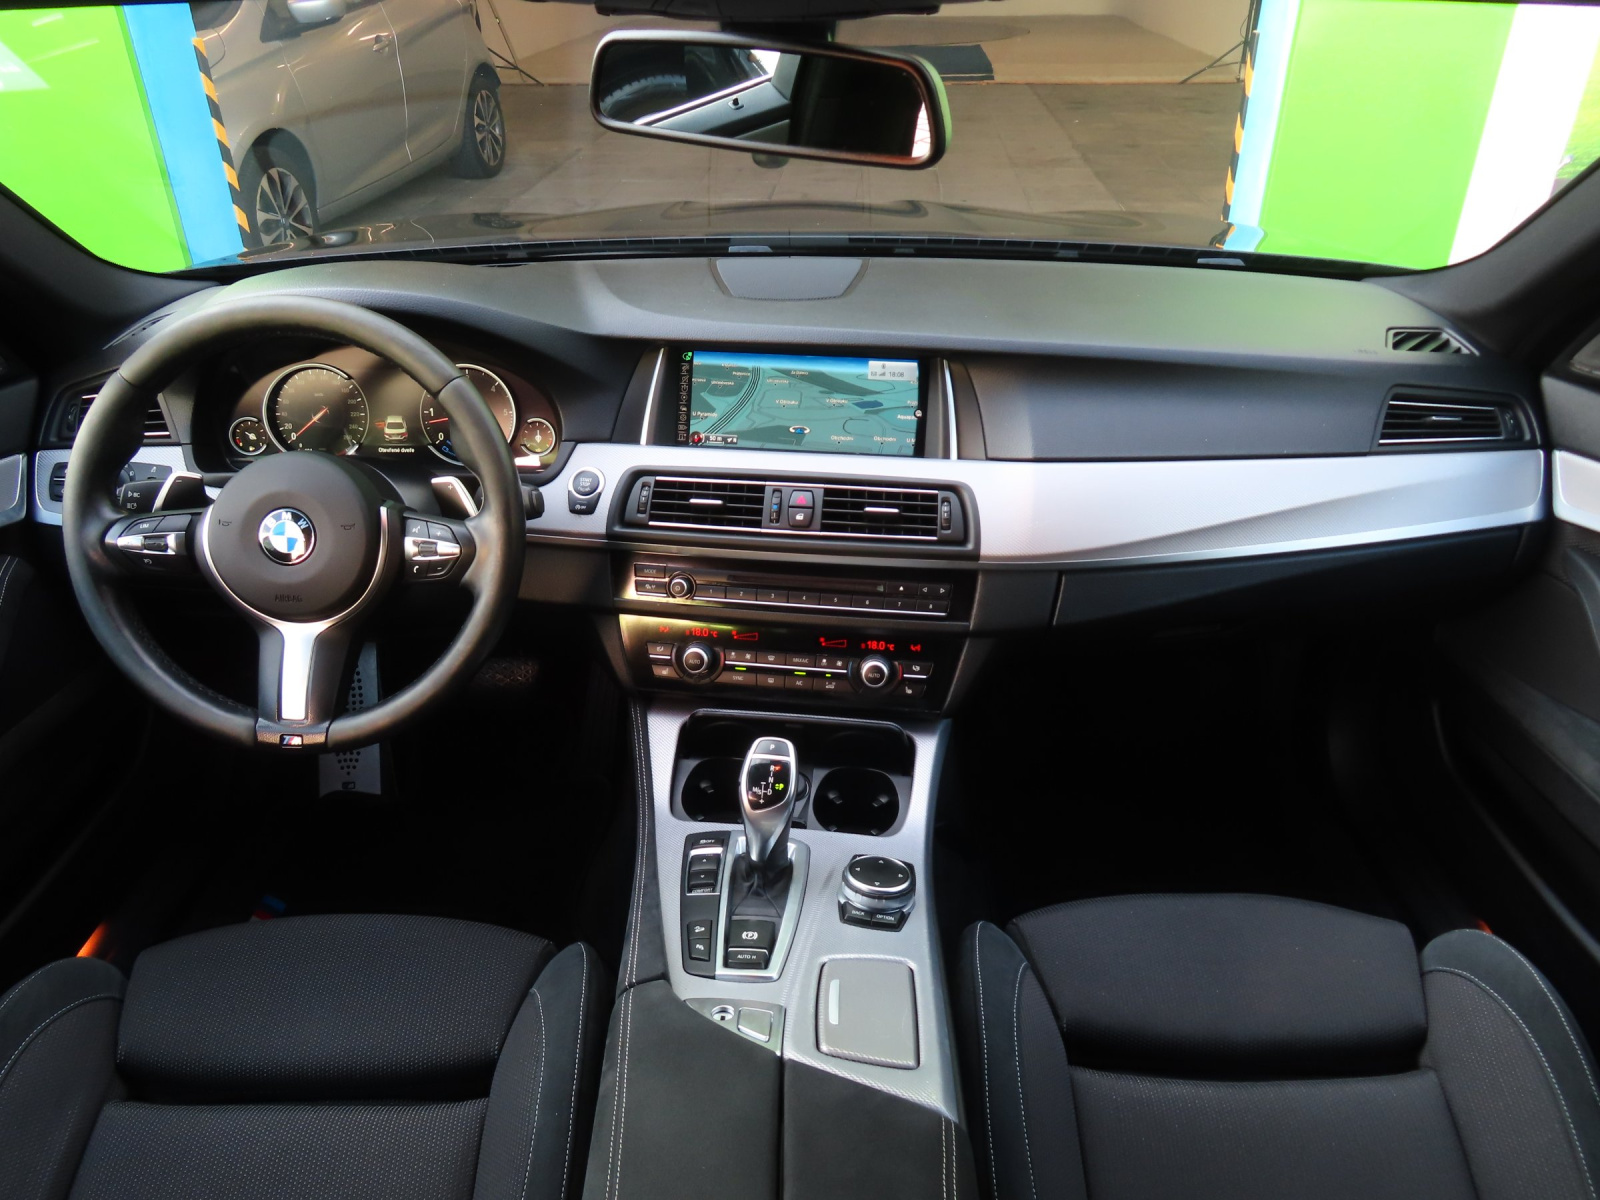 BMW 530d xDrive, 2014, 530d xDrive, 190kW, 4x4